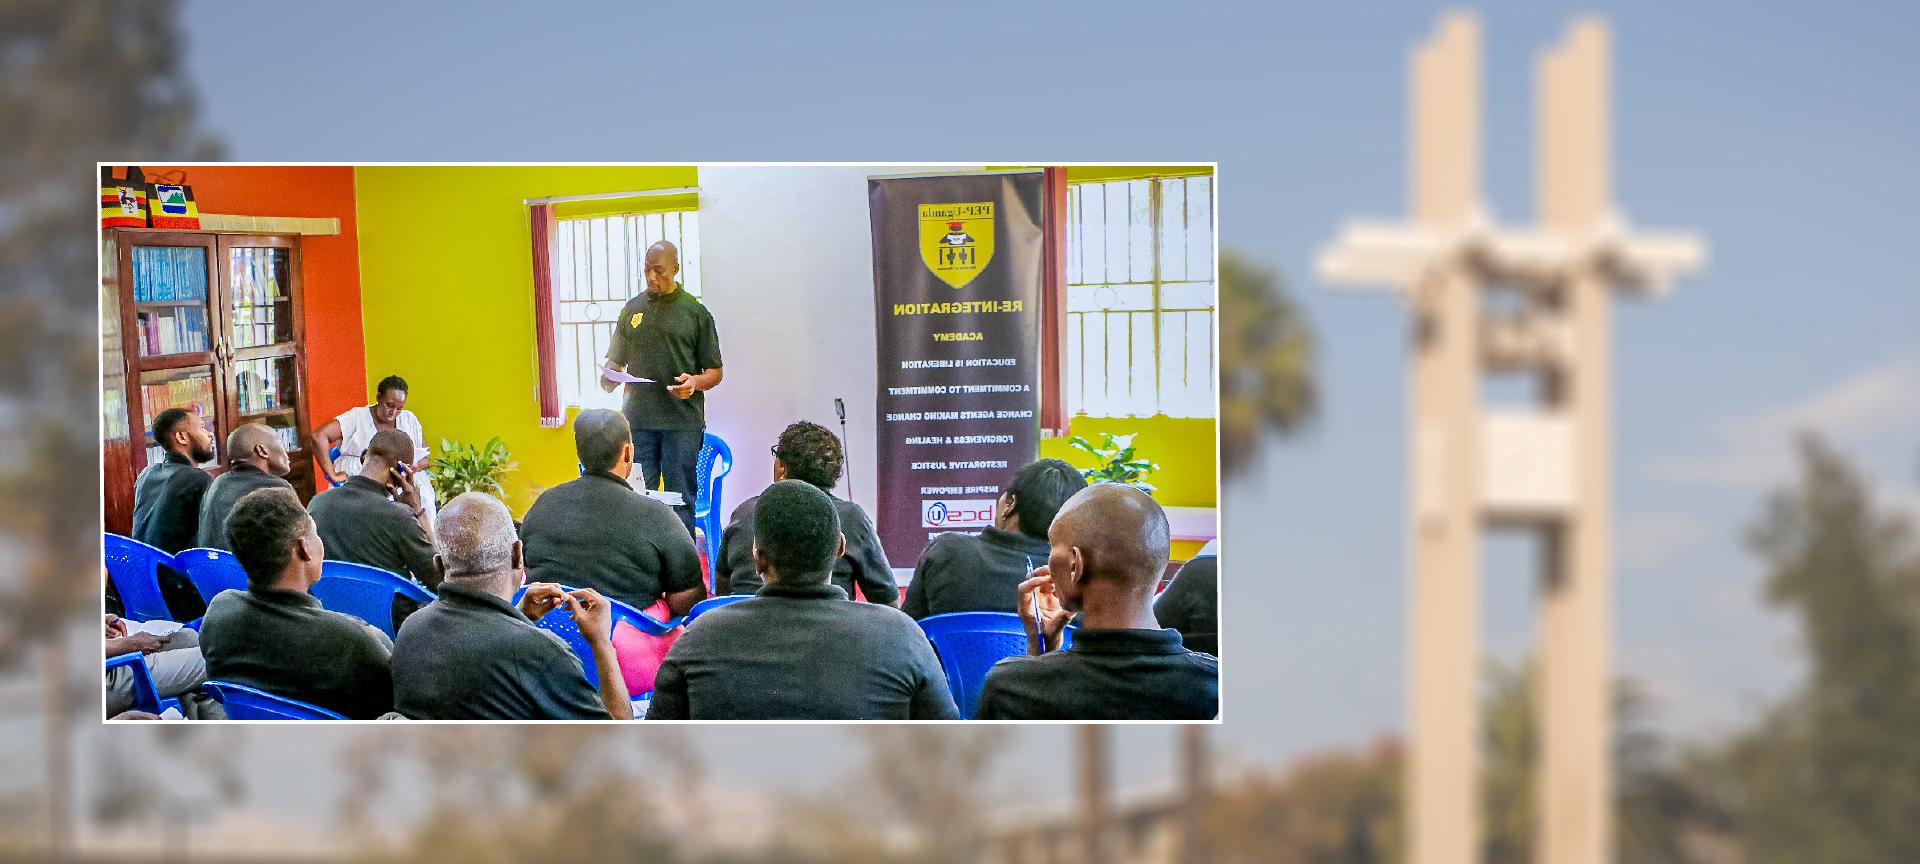 肯尼斯·巴特勒在乌干达发表演讲